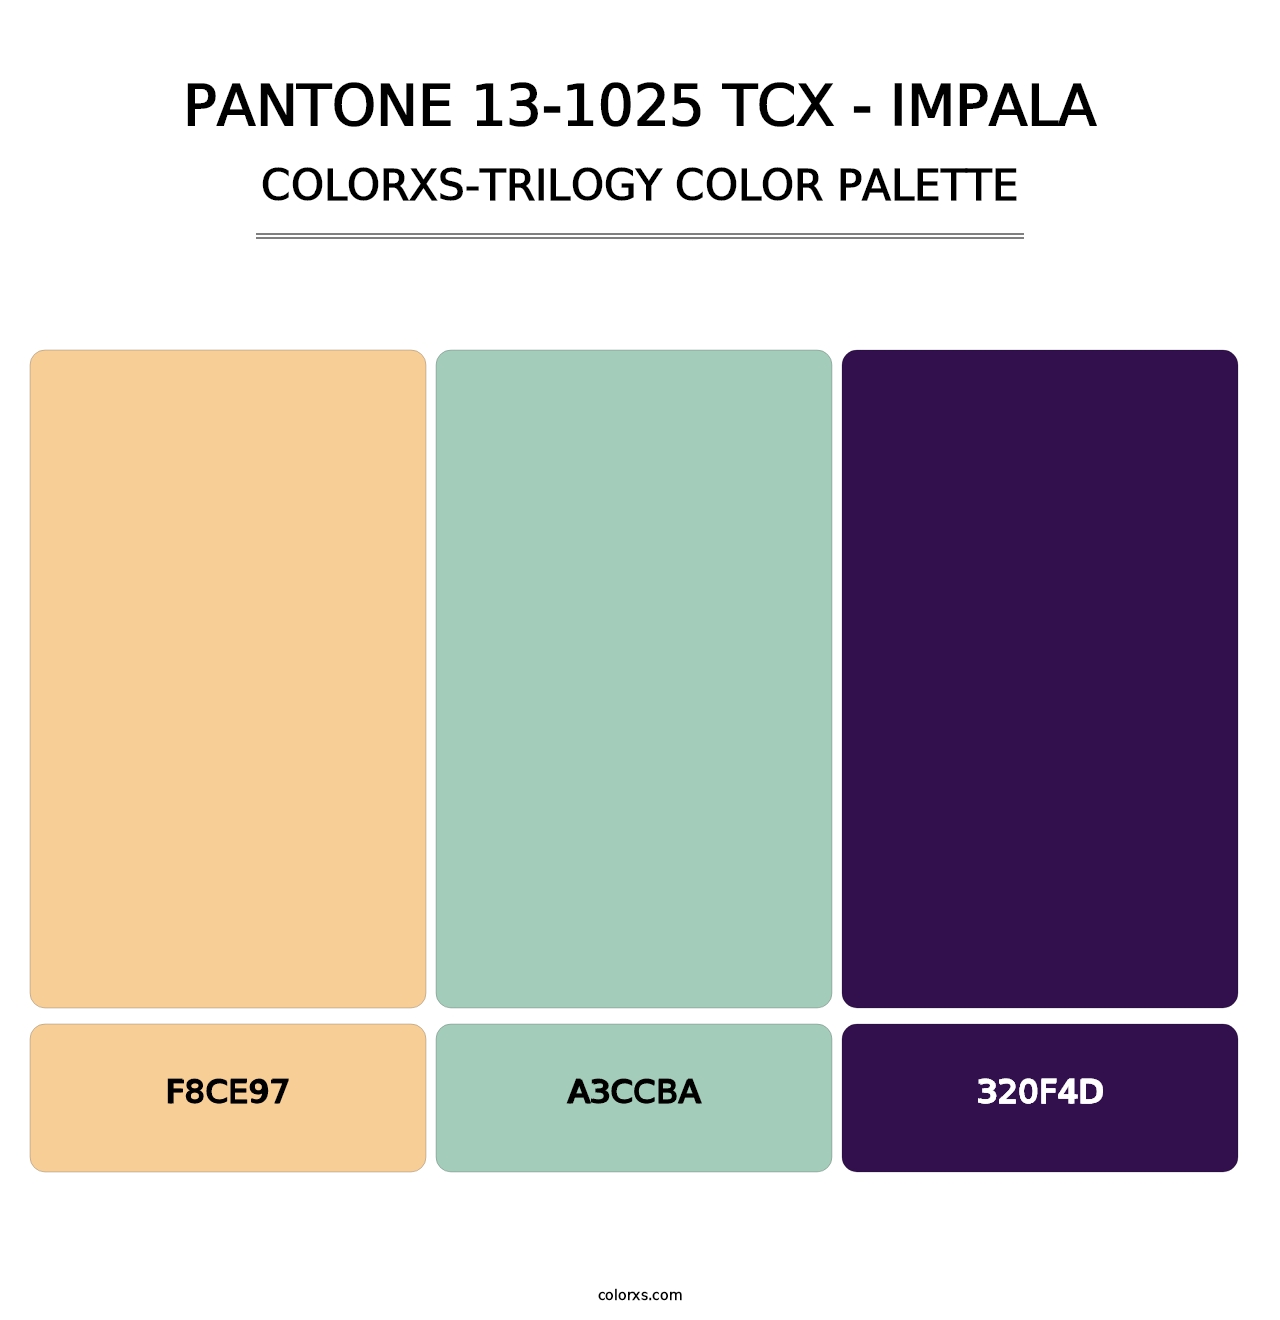 PANTONE 13-1025 TCX - Impala - Colorxs Trilogy Palette